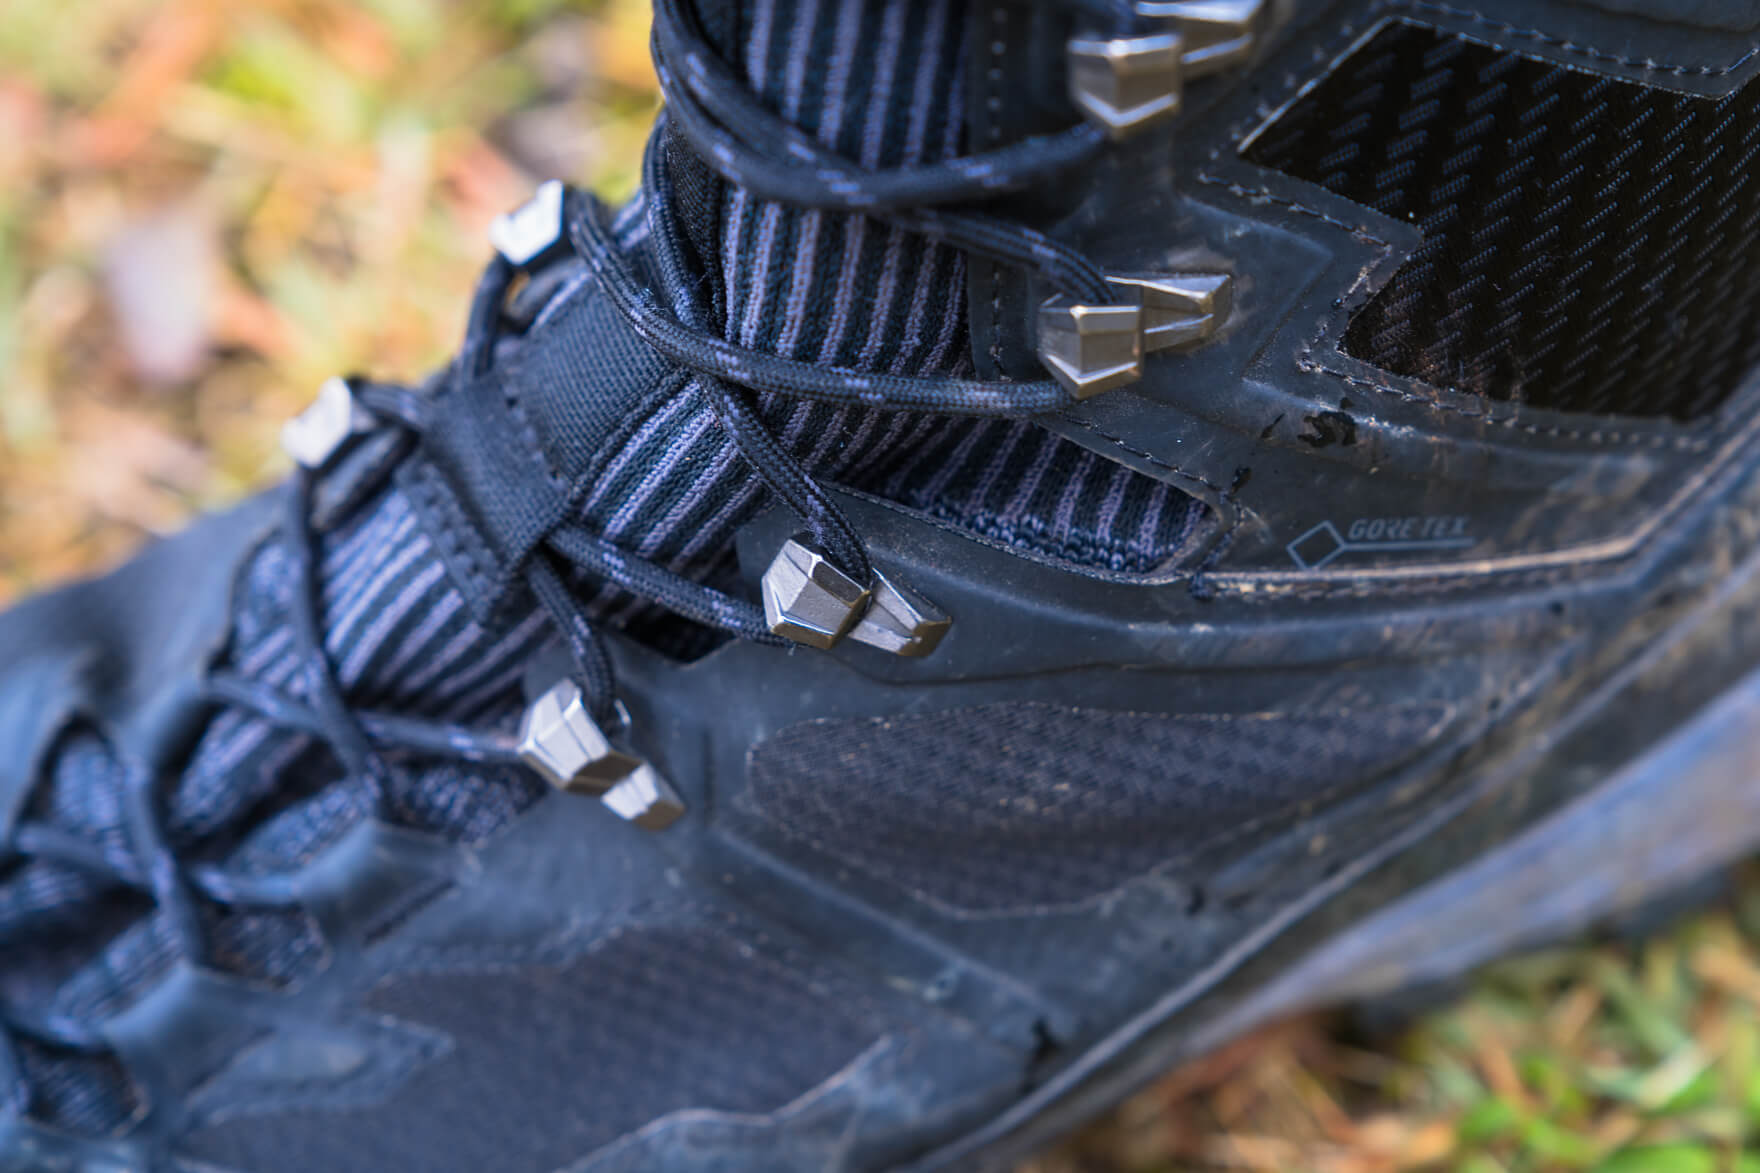 Review Mammut Ducan Knit High Gtx これがハイテク登山靴か 堅牢性の中にきらりと光る軽快さと極フィットが絶妙なトレッキングブーツ Outdoor Gearzine アウトドアギアジン